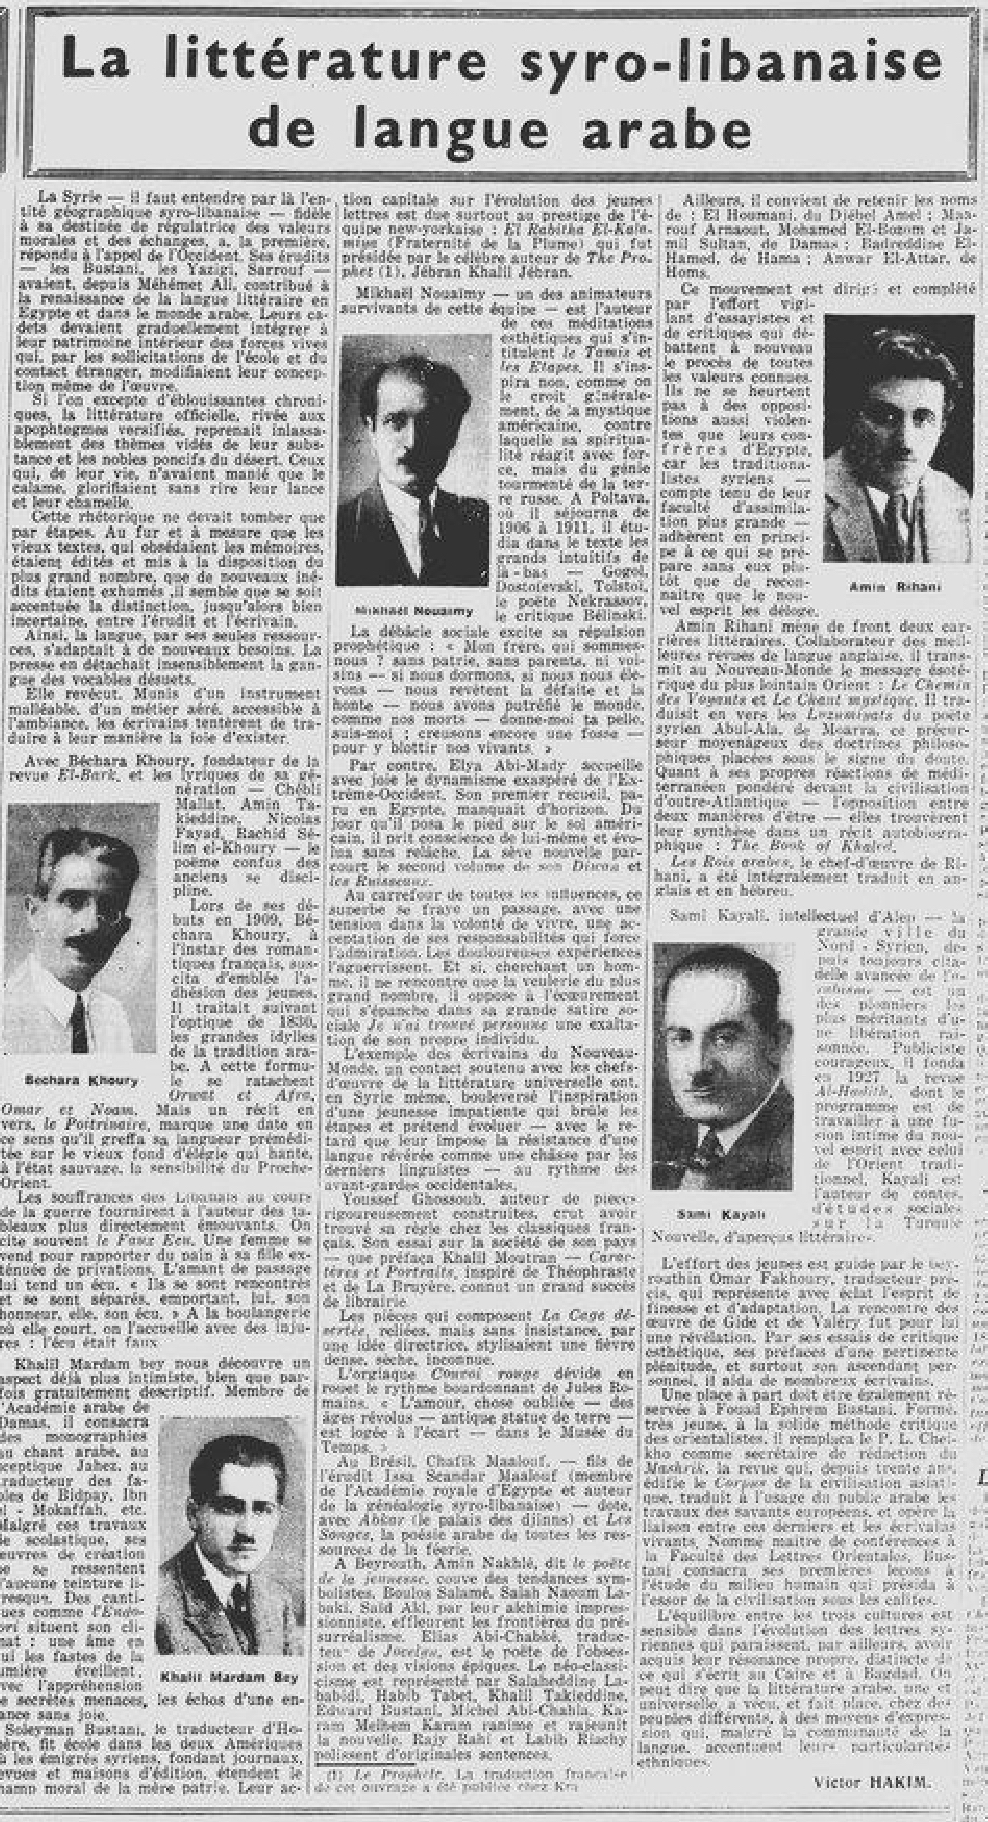 Victor Hakim, La littérature syro-libanaise de langue arabe, "Les Nouvelles littéraires, artistiques et scientifiques", 12-1-1935, p. 6.